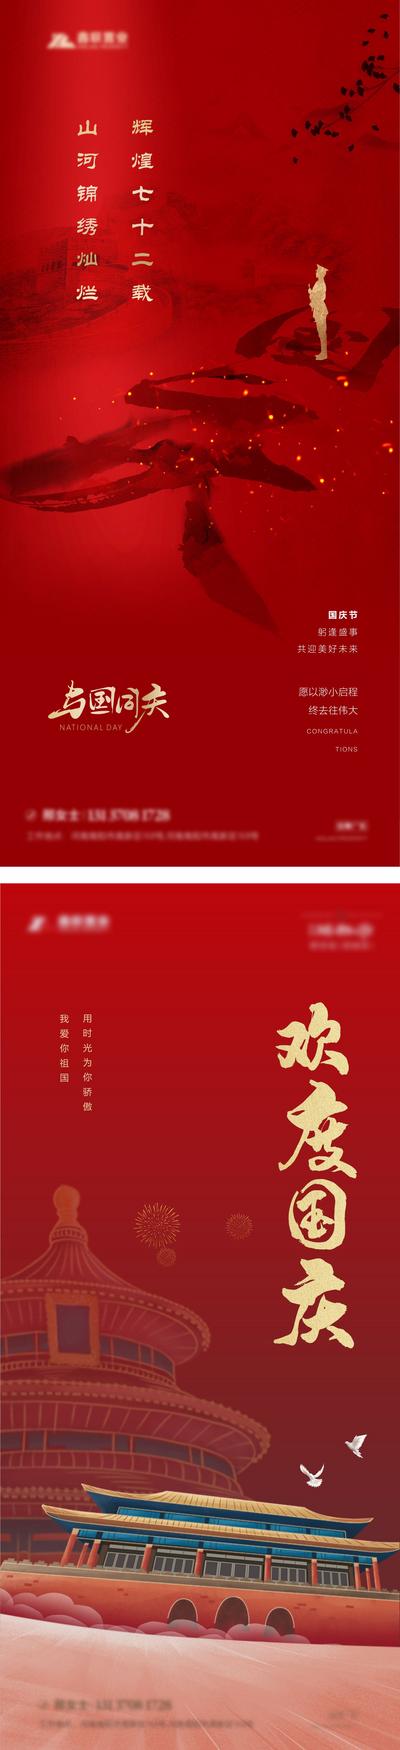 南门网 海报 房地产 公历节日 十一 国庆节 文字 古风 建筑